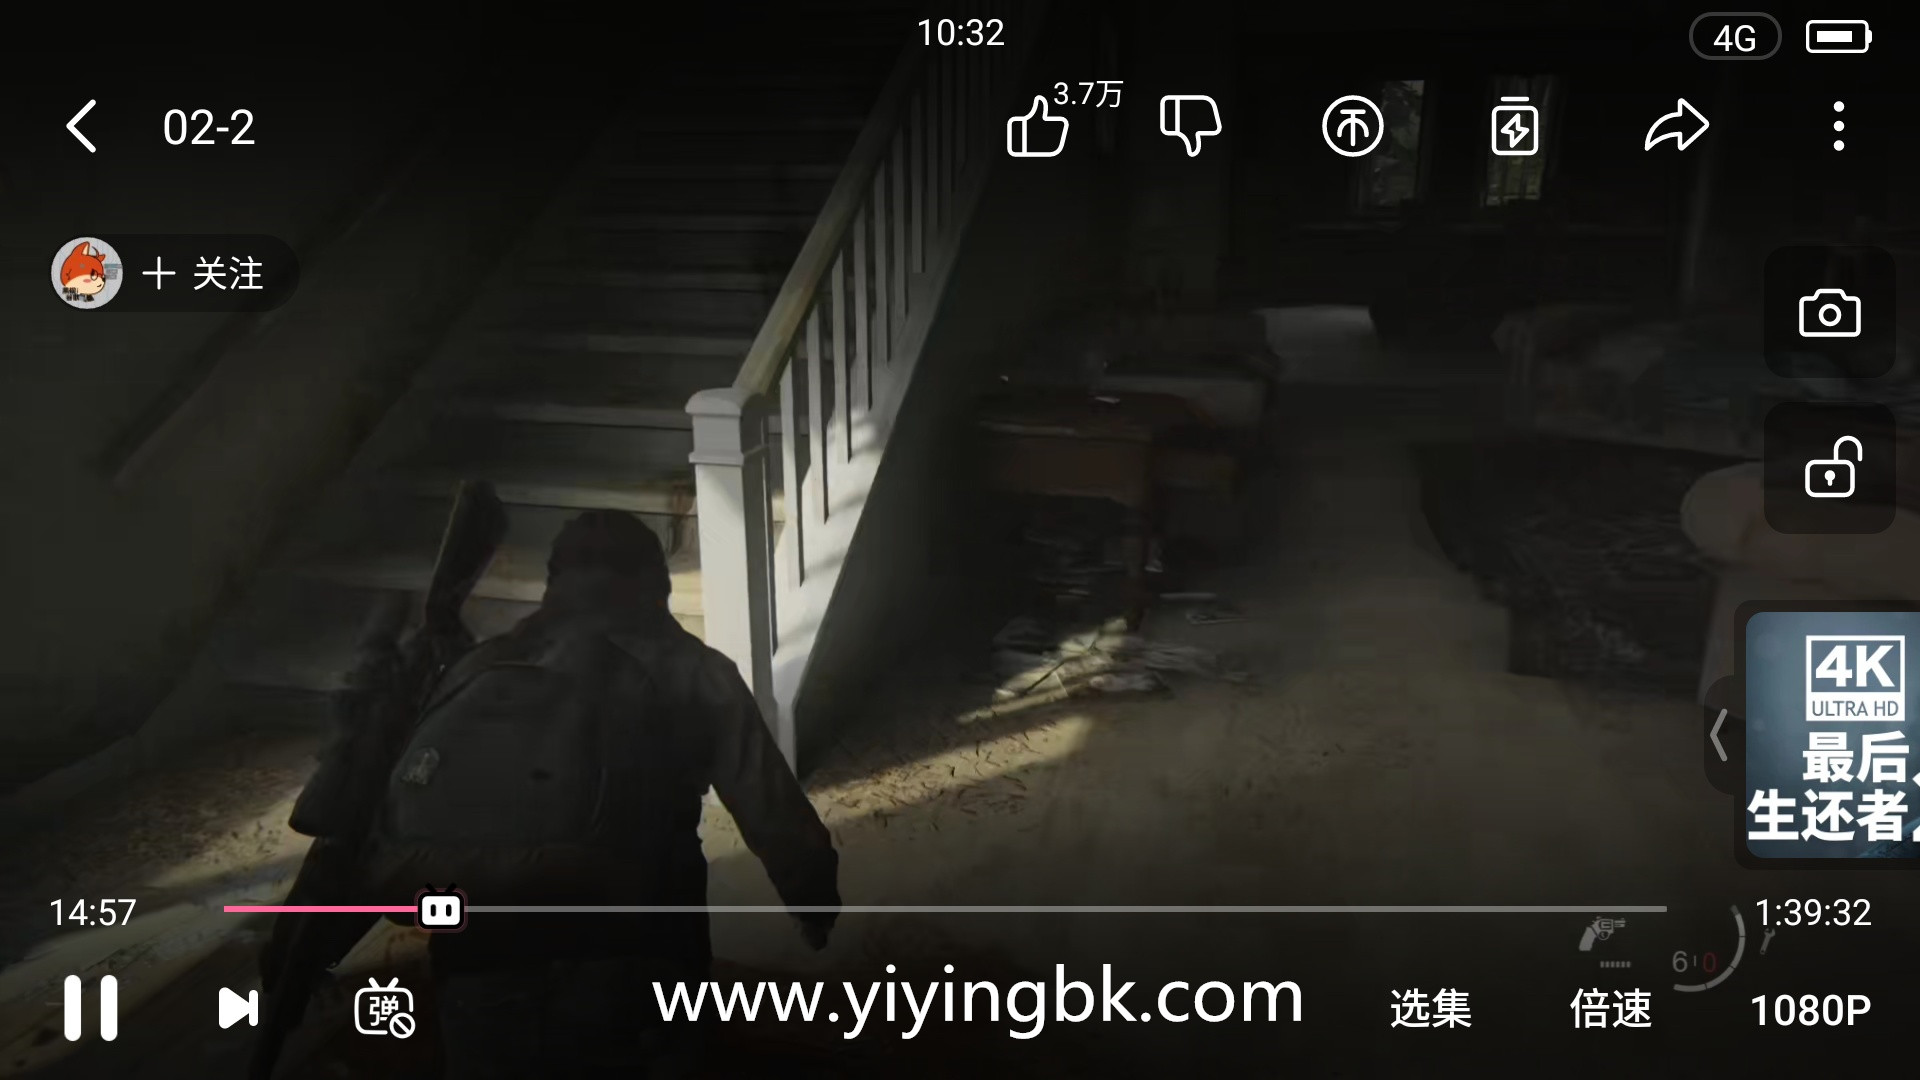 最后生还者2，美国末日2，蓝光1080P超高清全流程视频解说画面。www.yiyingbk.com